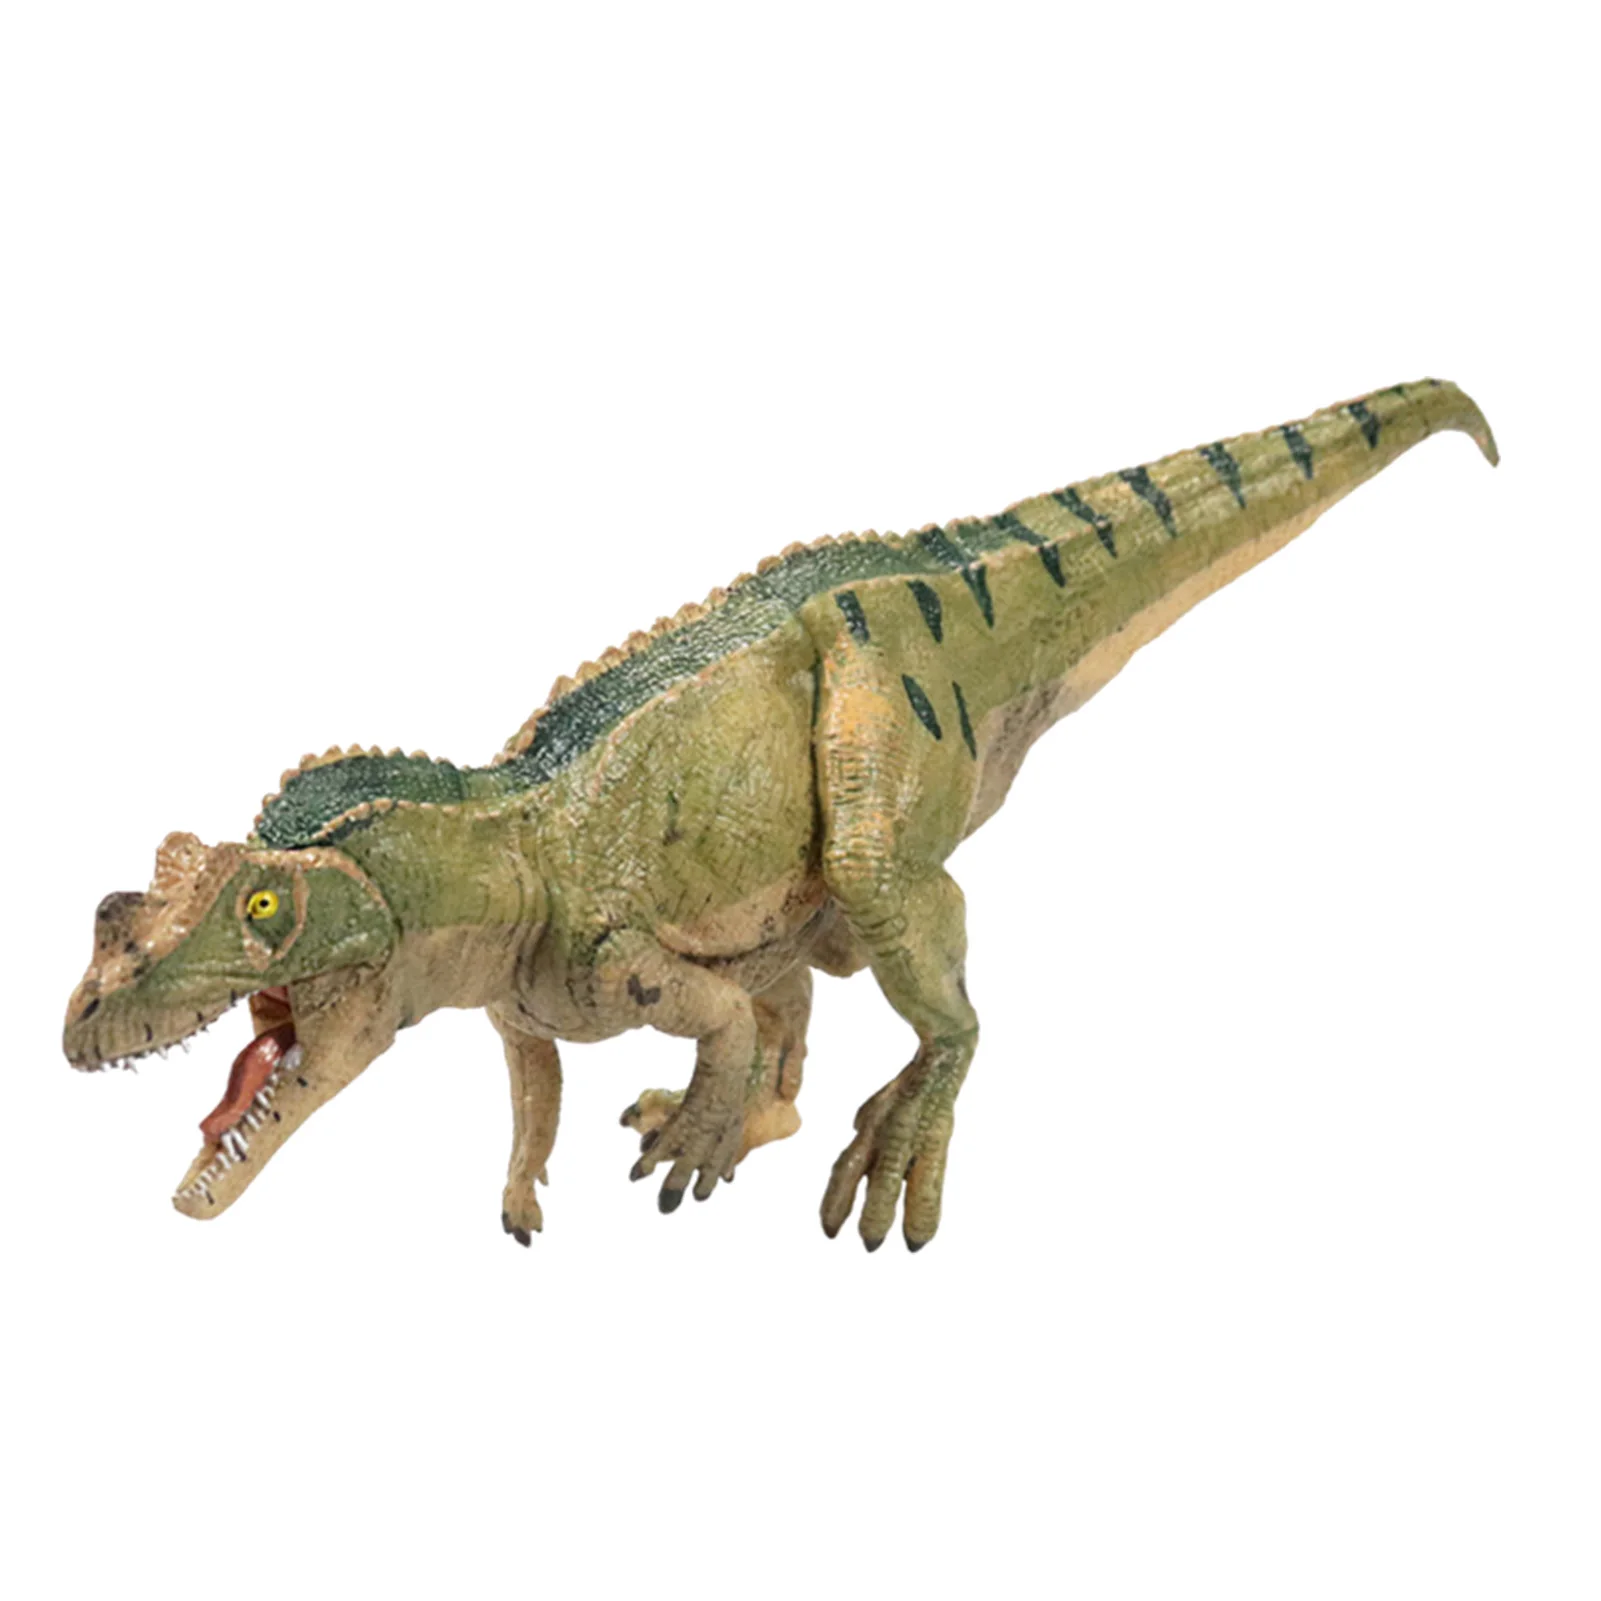 

Реалистичные фигурки динозавров юрского периода, Carnotaurus, модель динозавра, игрушки, развивающая игрушка для детей, динозавр, коллекционный ...